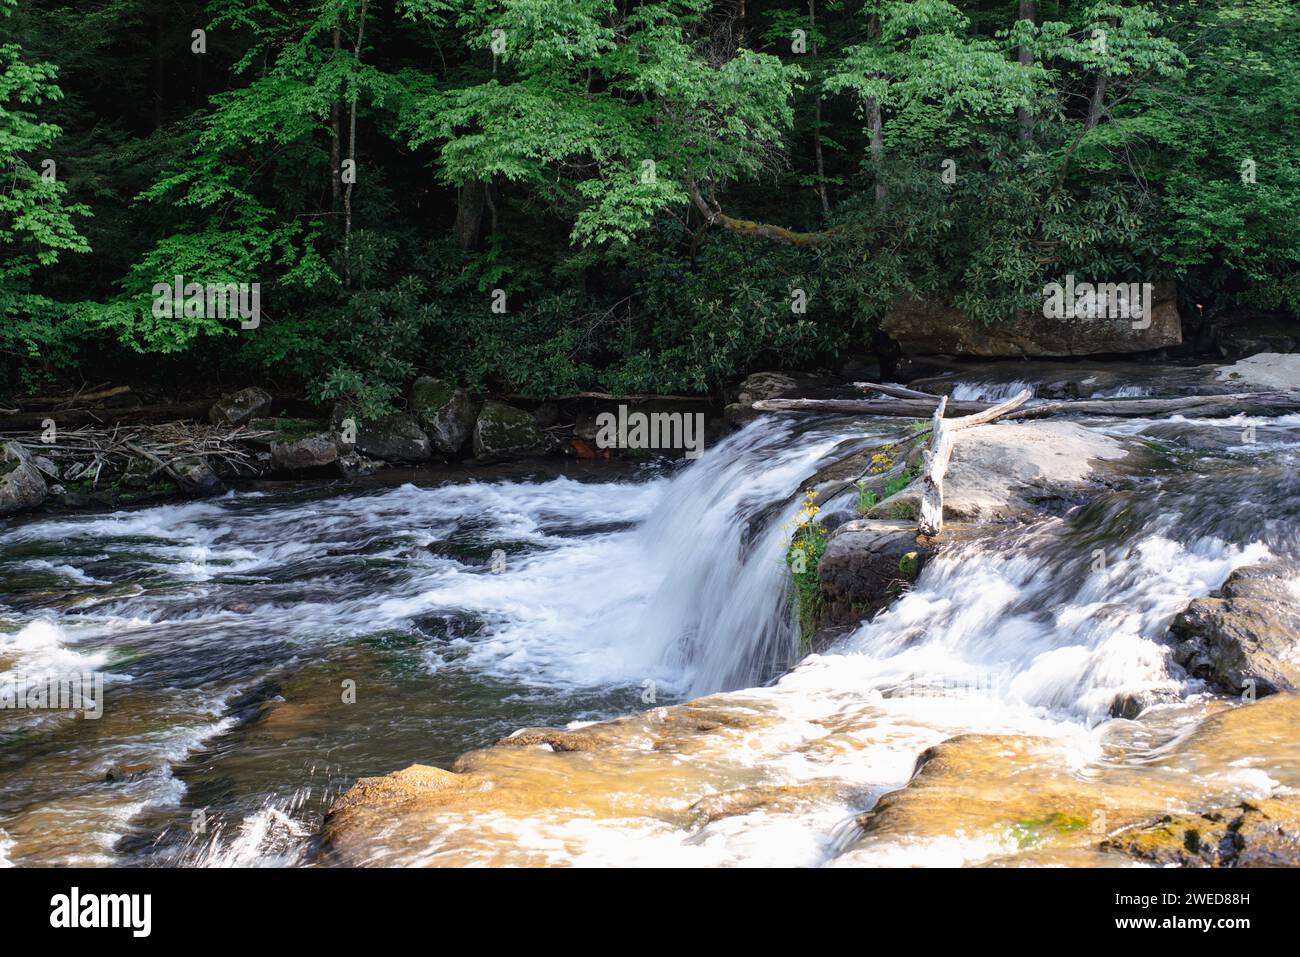 Escursioni lungo i tranquilli sentieri acquatici dell'Ohiopyle State Park, Pennsylvania, dove la bellezza della natura incontra l'avventura all'aperto Foto Stock